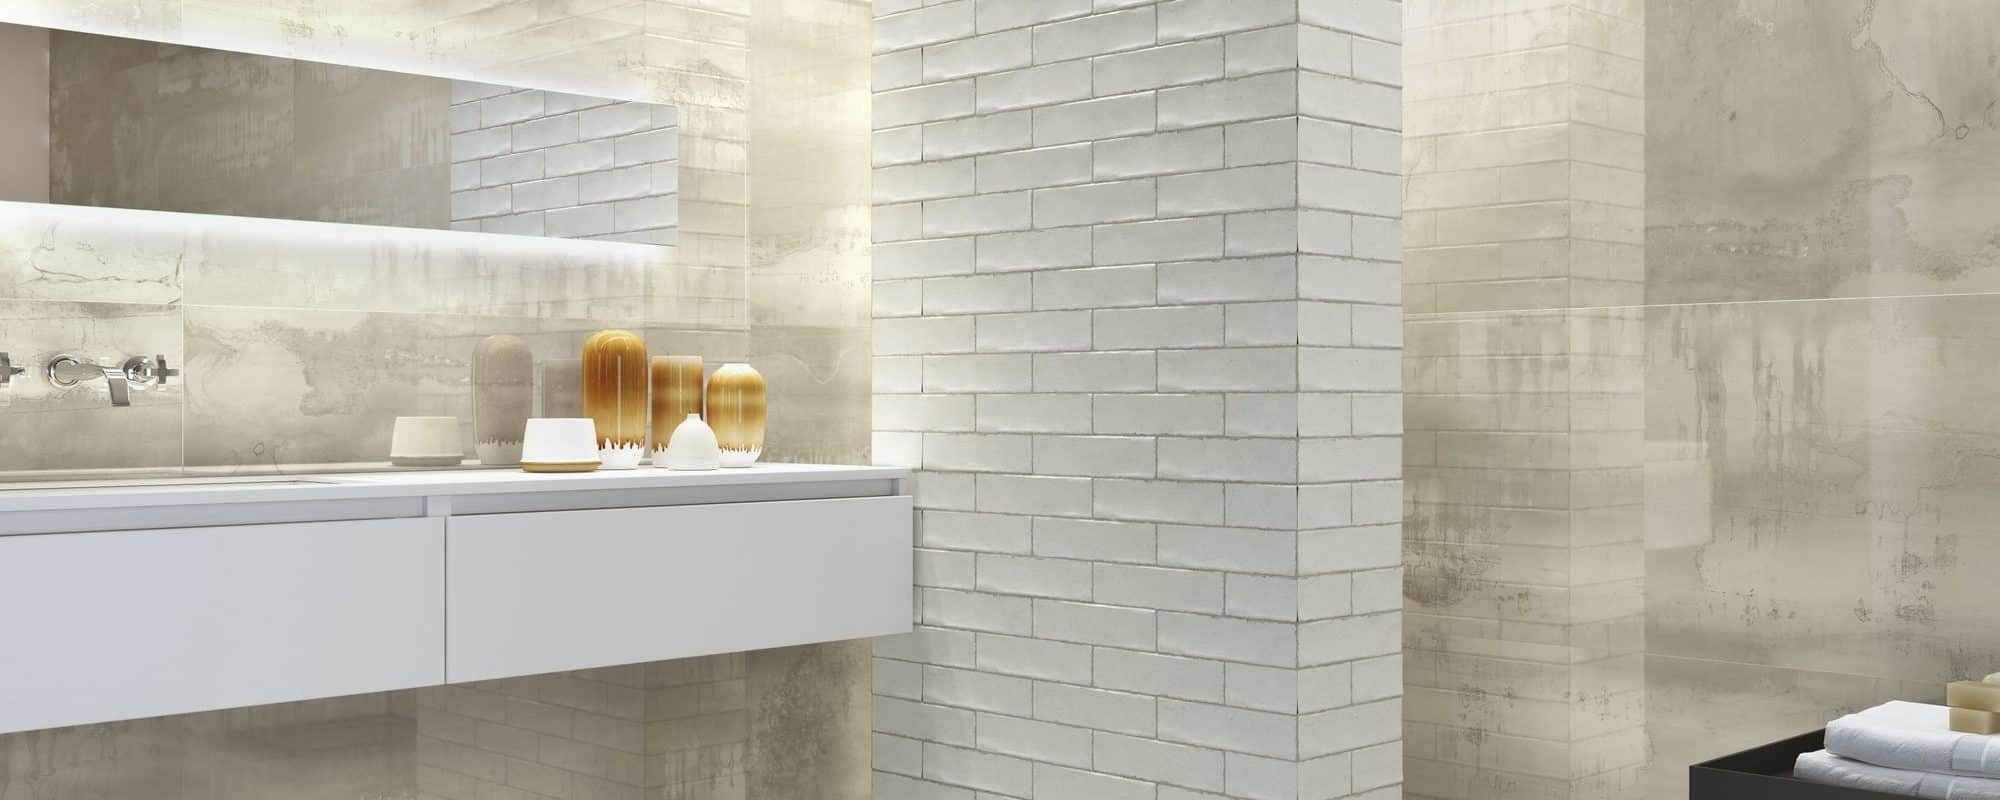 Metal Effect Porcelain Wall Tiles for bathroom uk slider